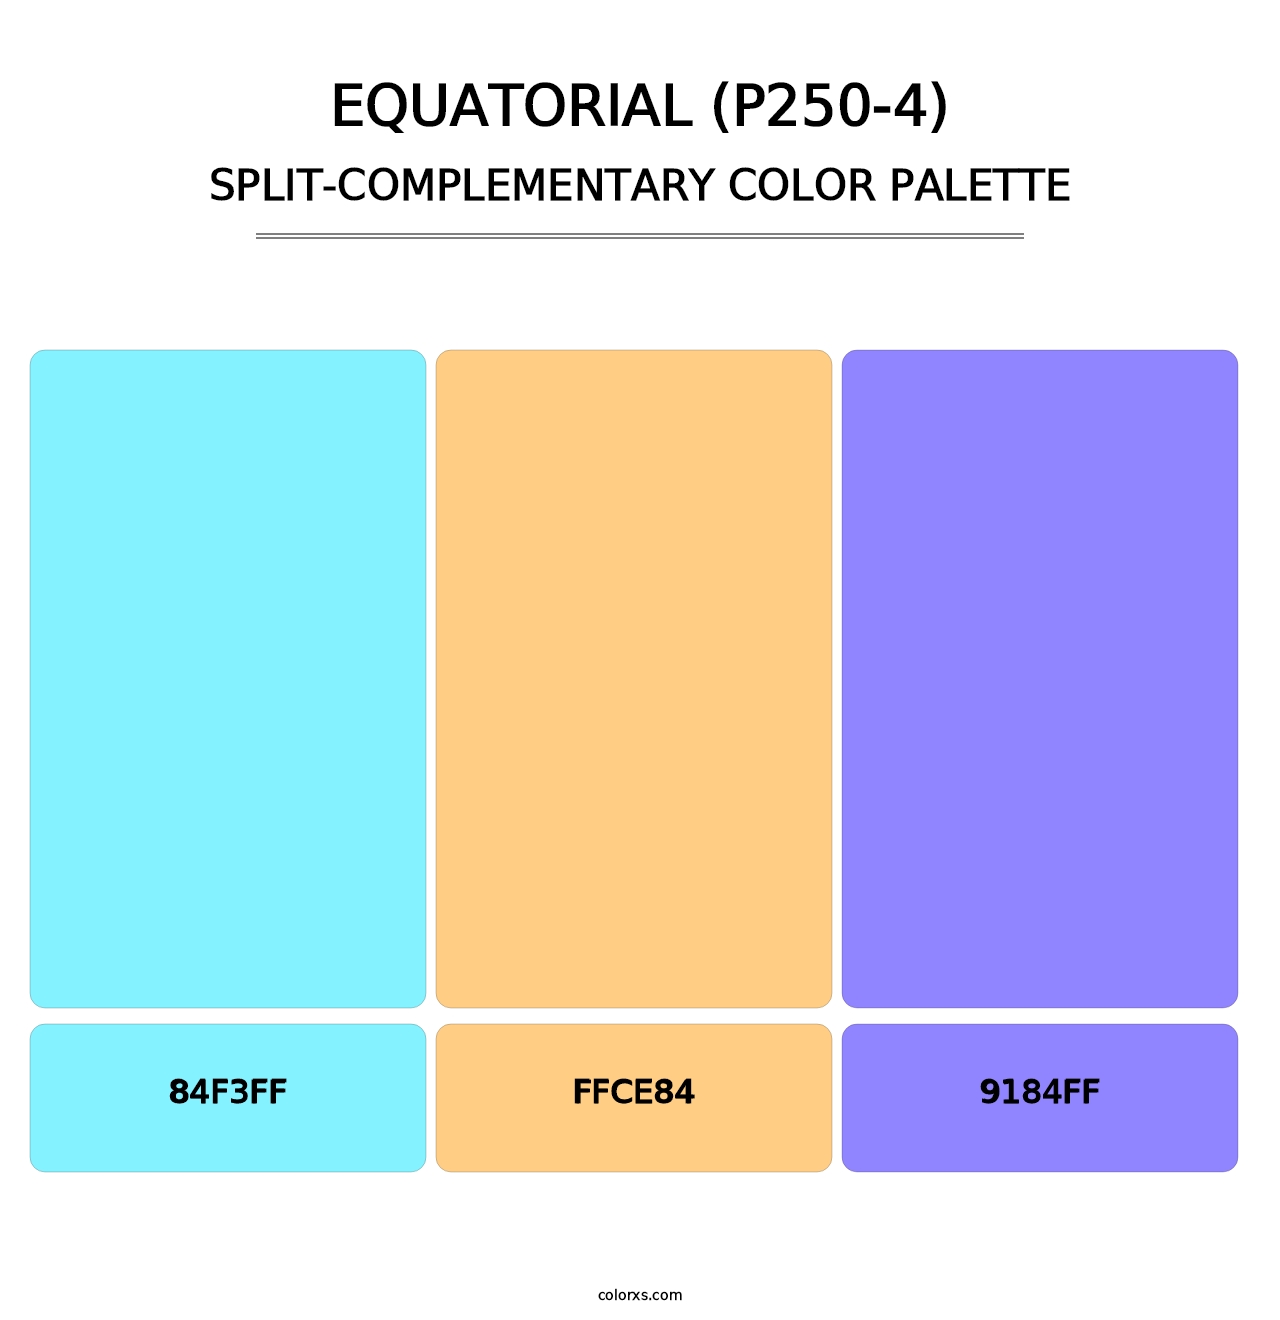 Equatorial (P250-4) - Split-Complementary Color Palette